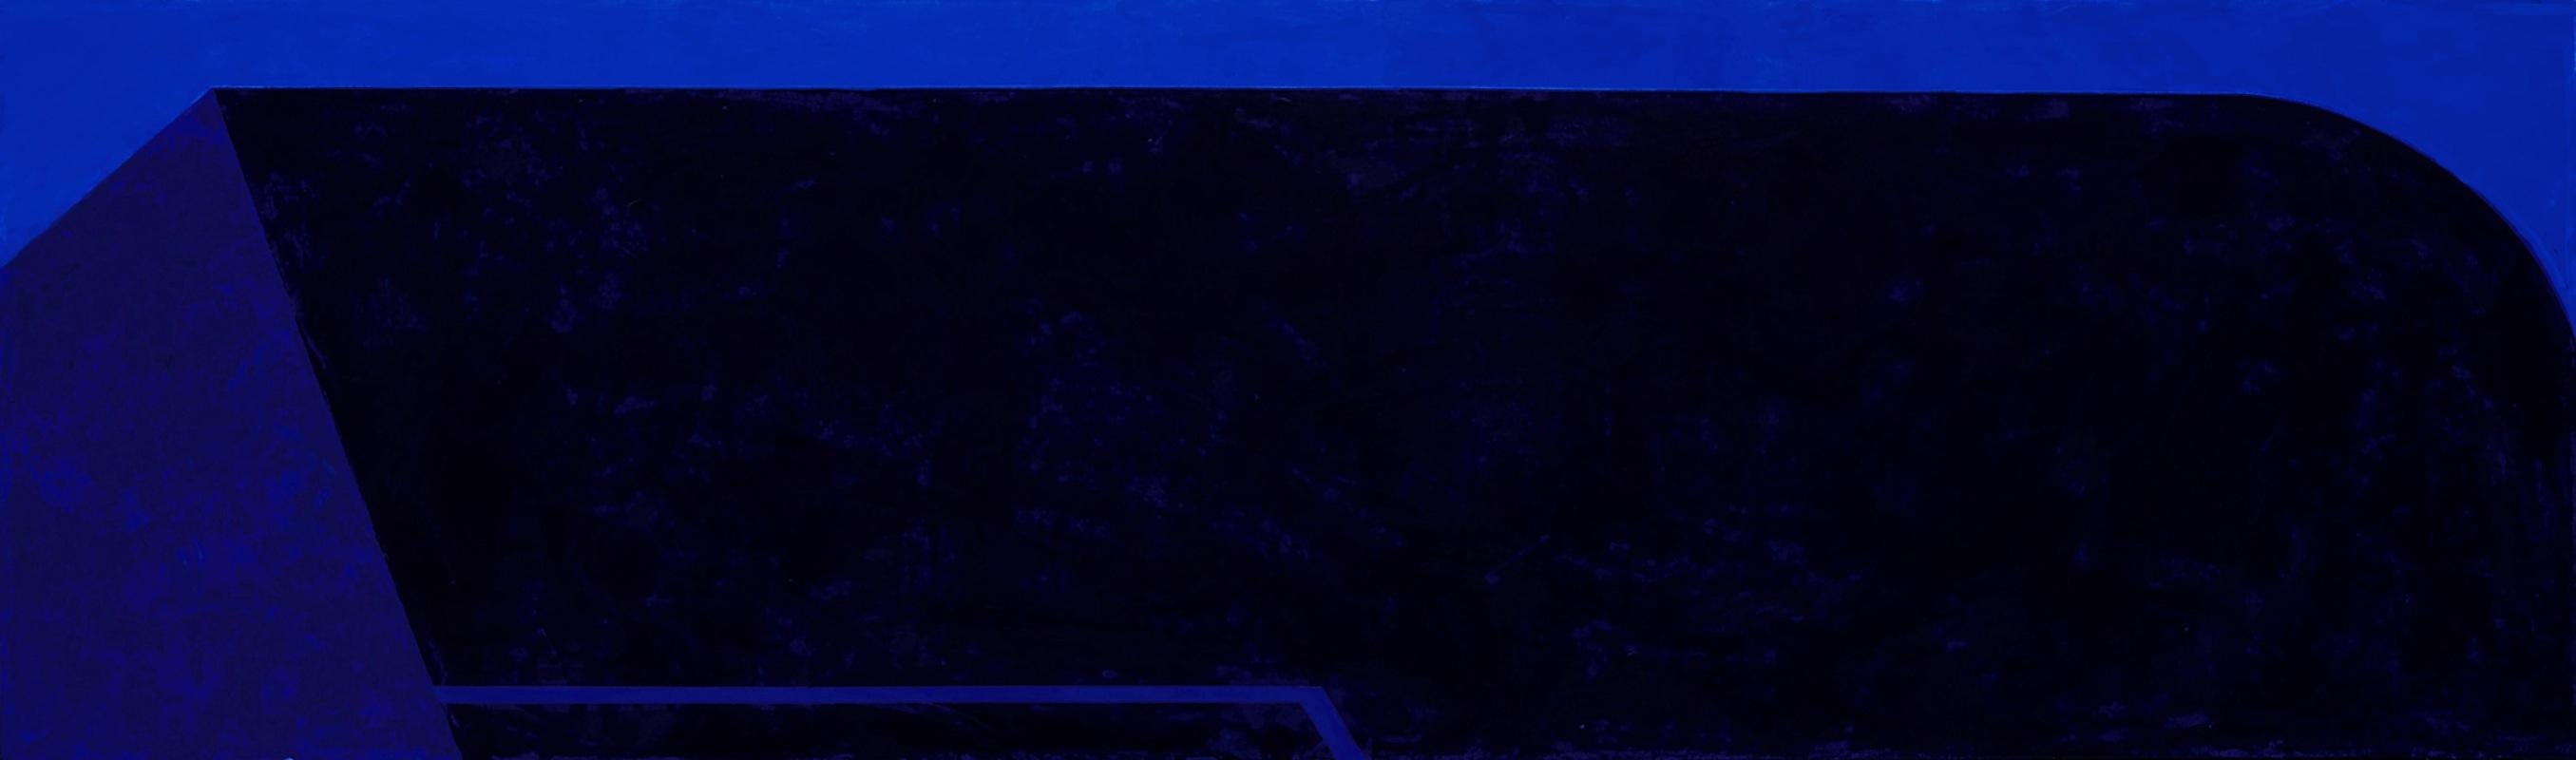 Macyn Bolt, Dark Pool II, Acryl auf Leinwand, Minimalist, 18 x 60, 2018 im Angebot 2